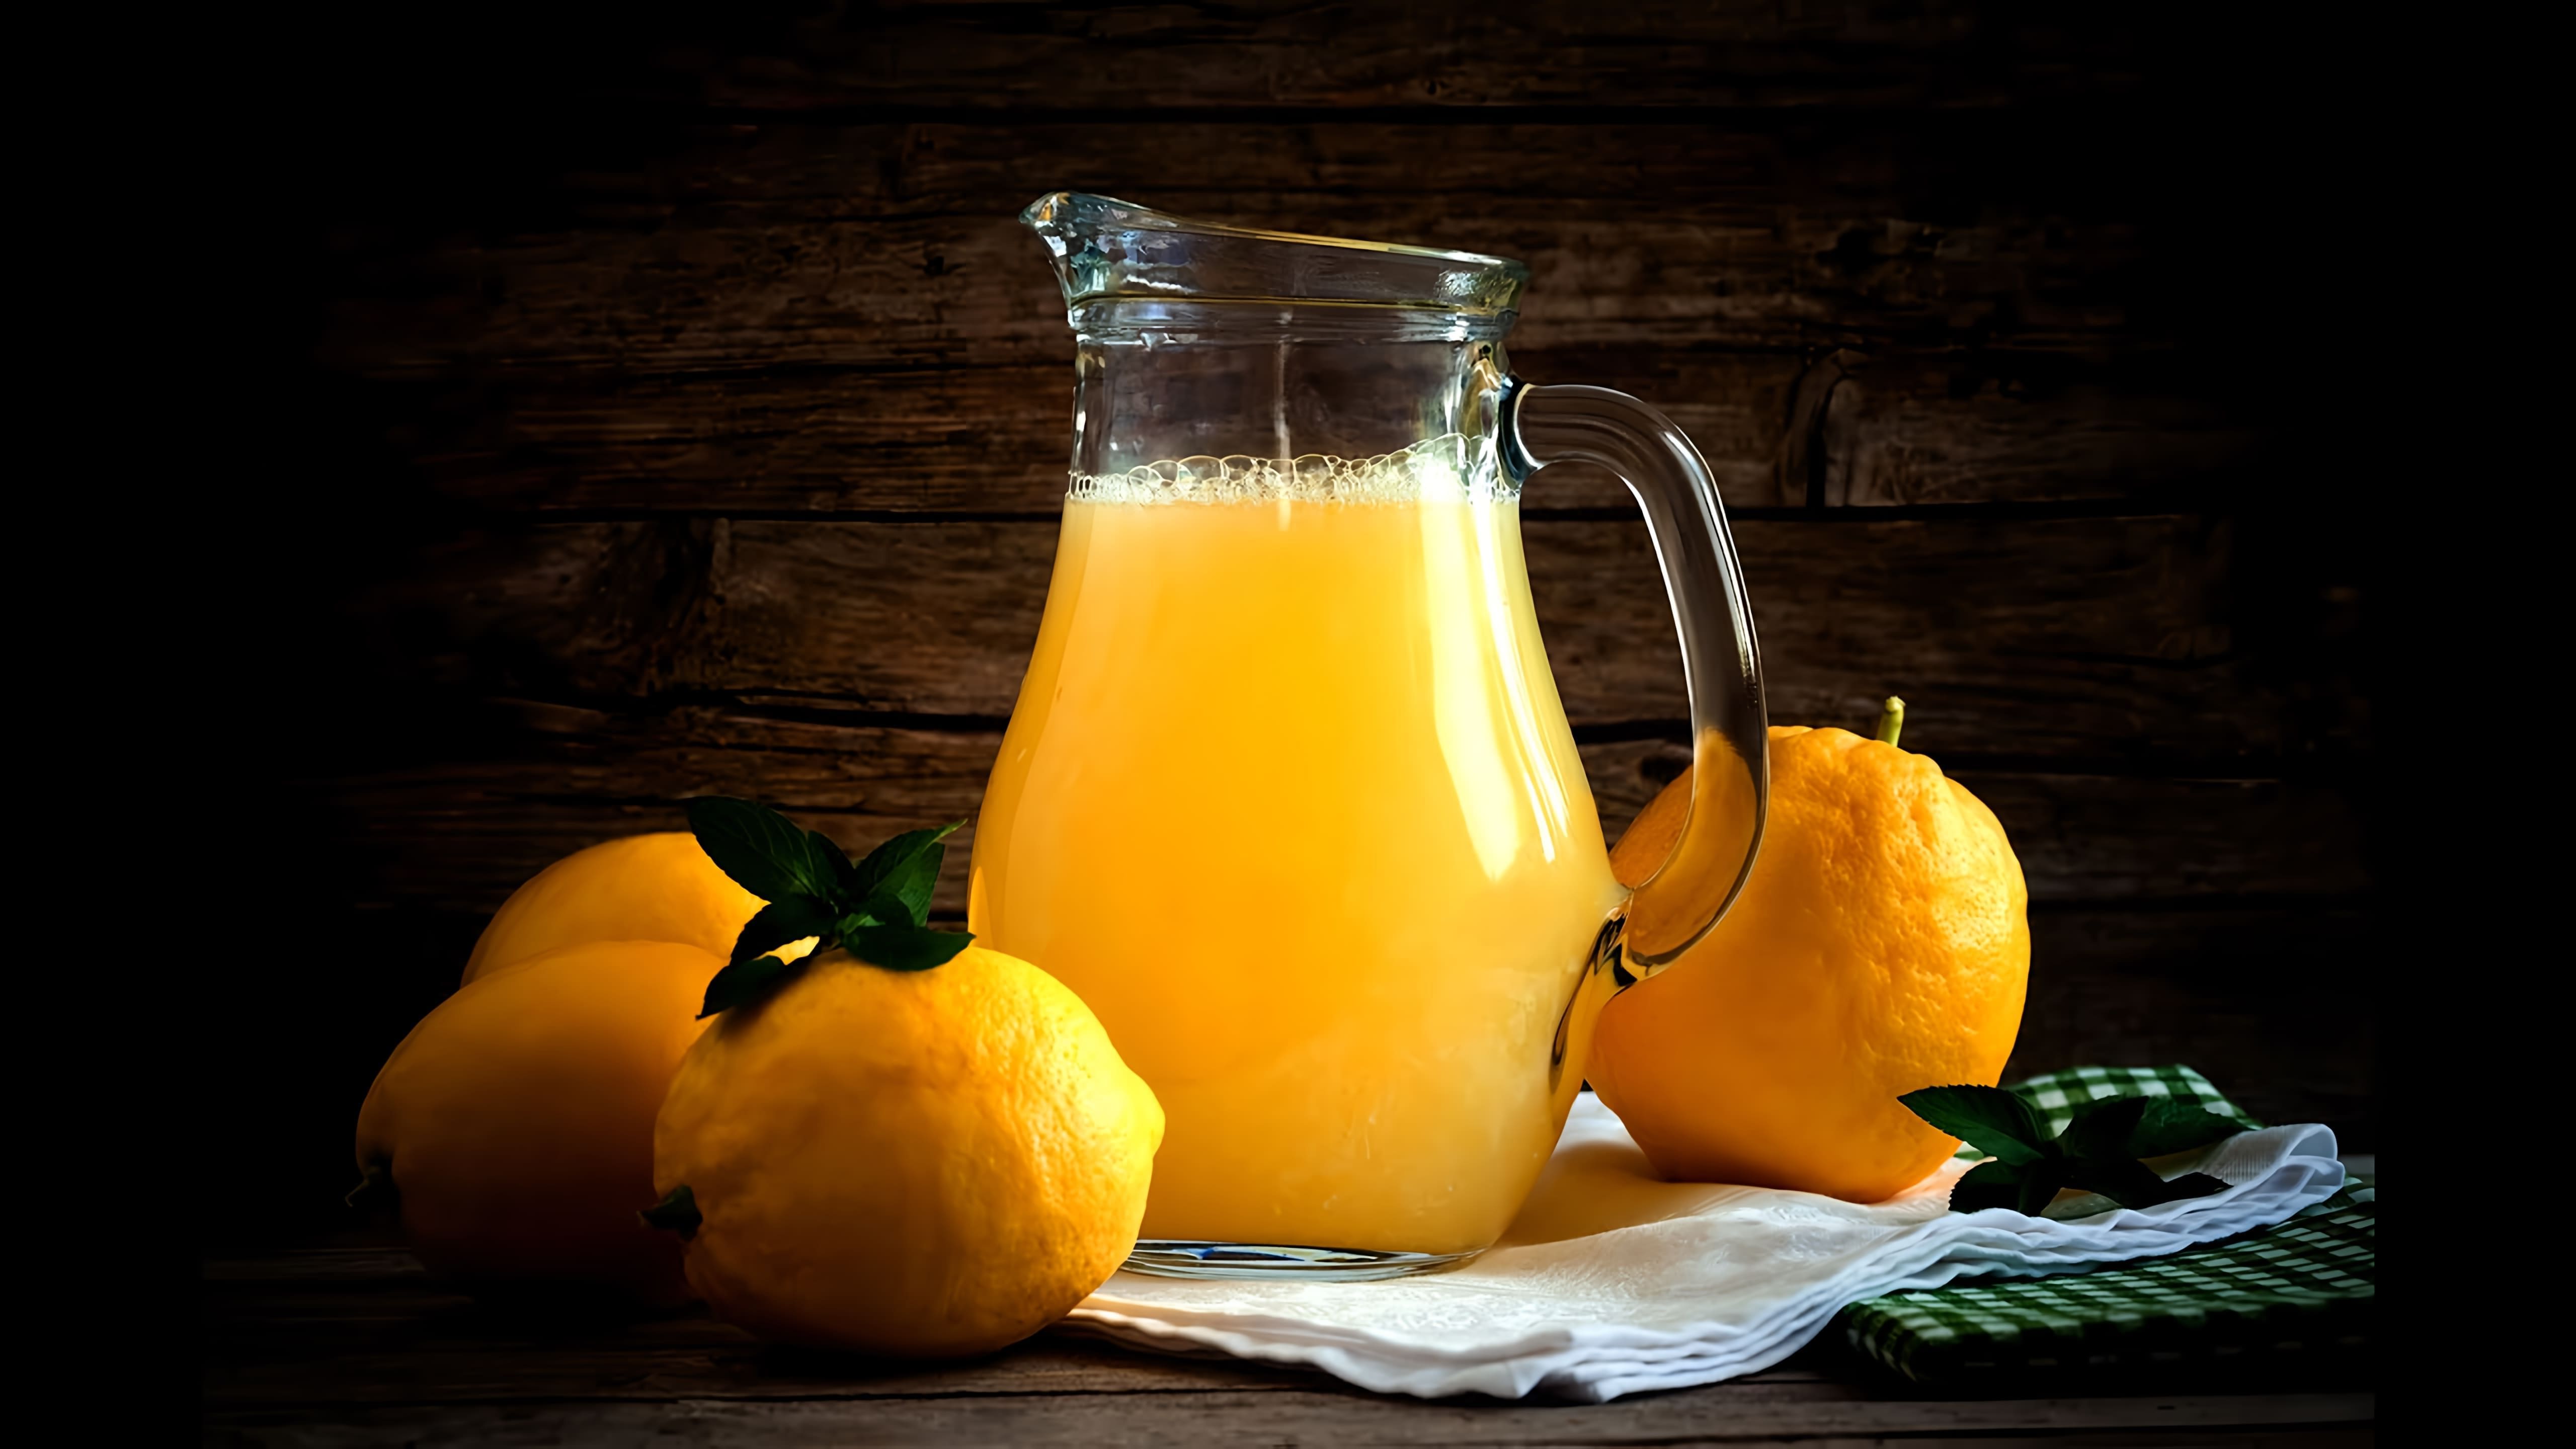 В этом видео демонстрируется рецепт приготовления лимонада из лимона и апельсина в домашних условиях